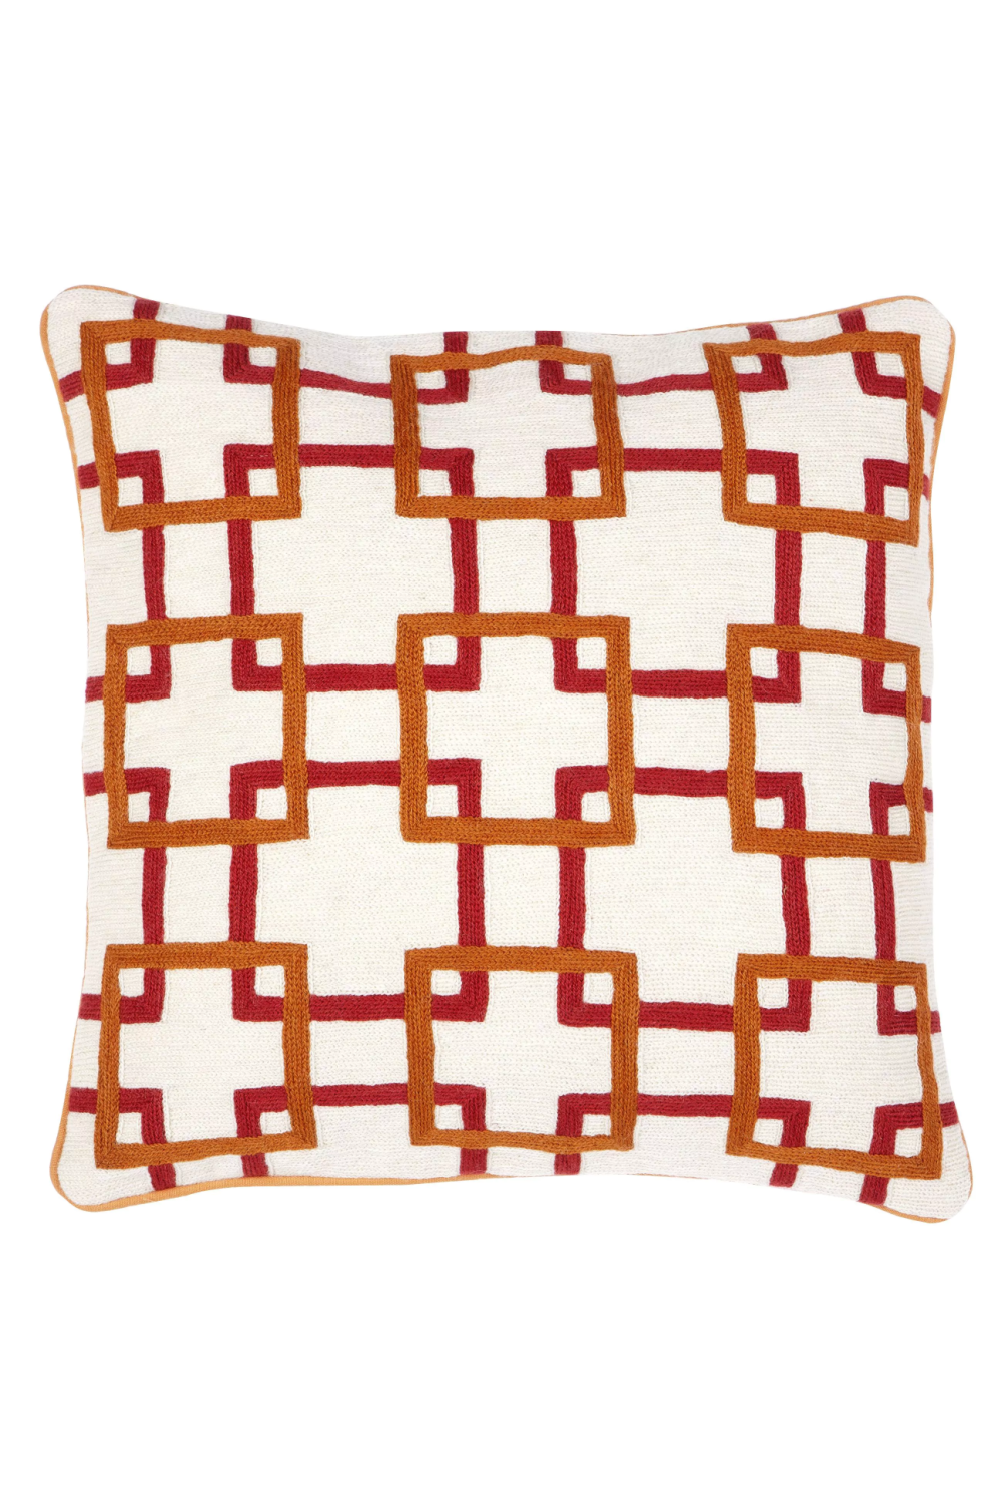 Orange and White Pillow | Eichholtz Bradburry | Oroa.com